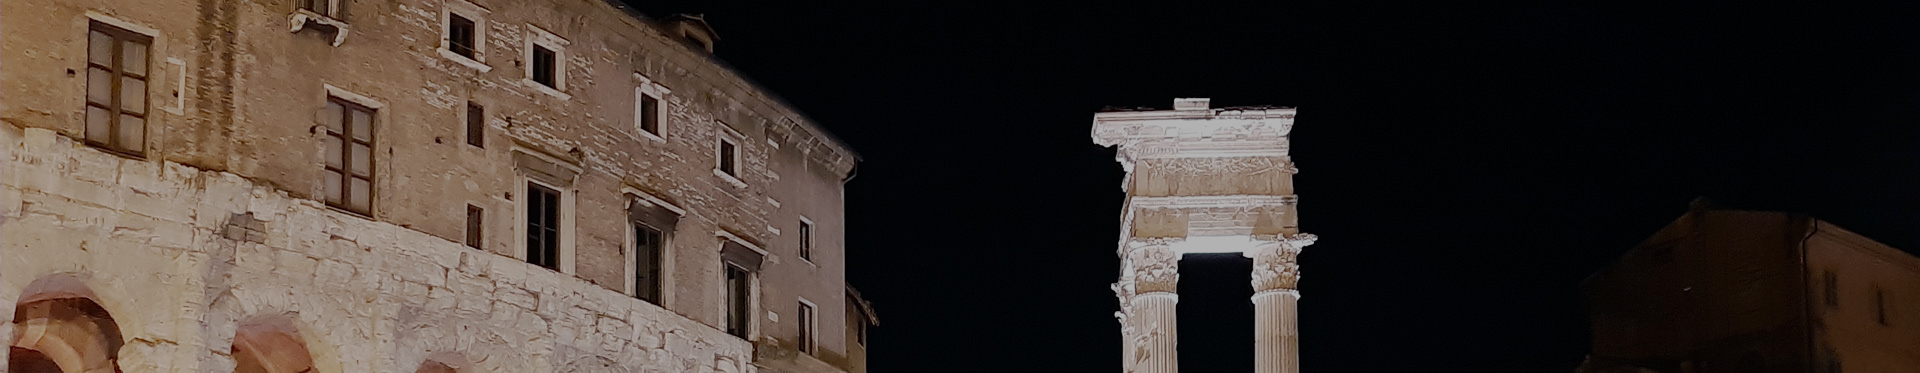 Acea, l'illuminazione del Teatro Marcello di Roma